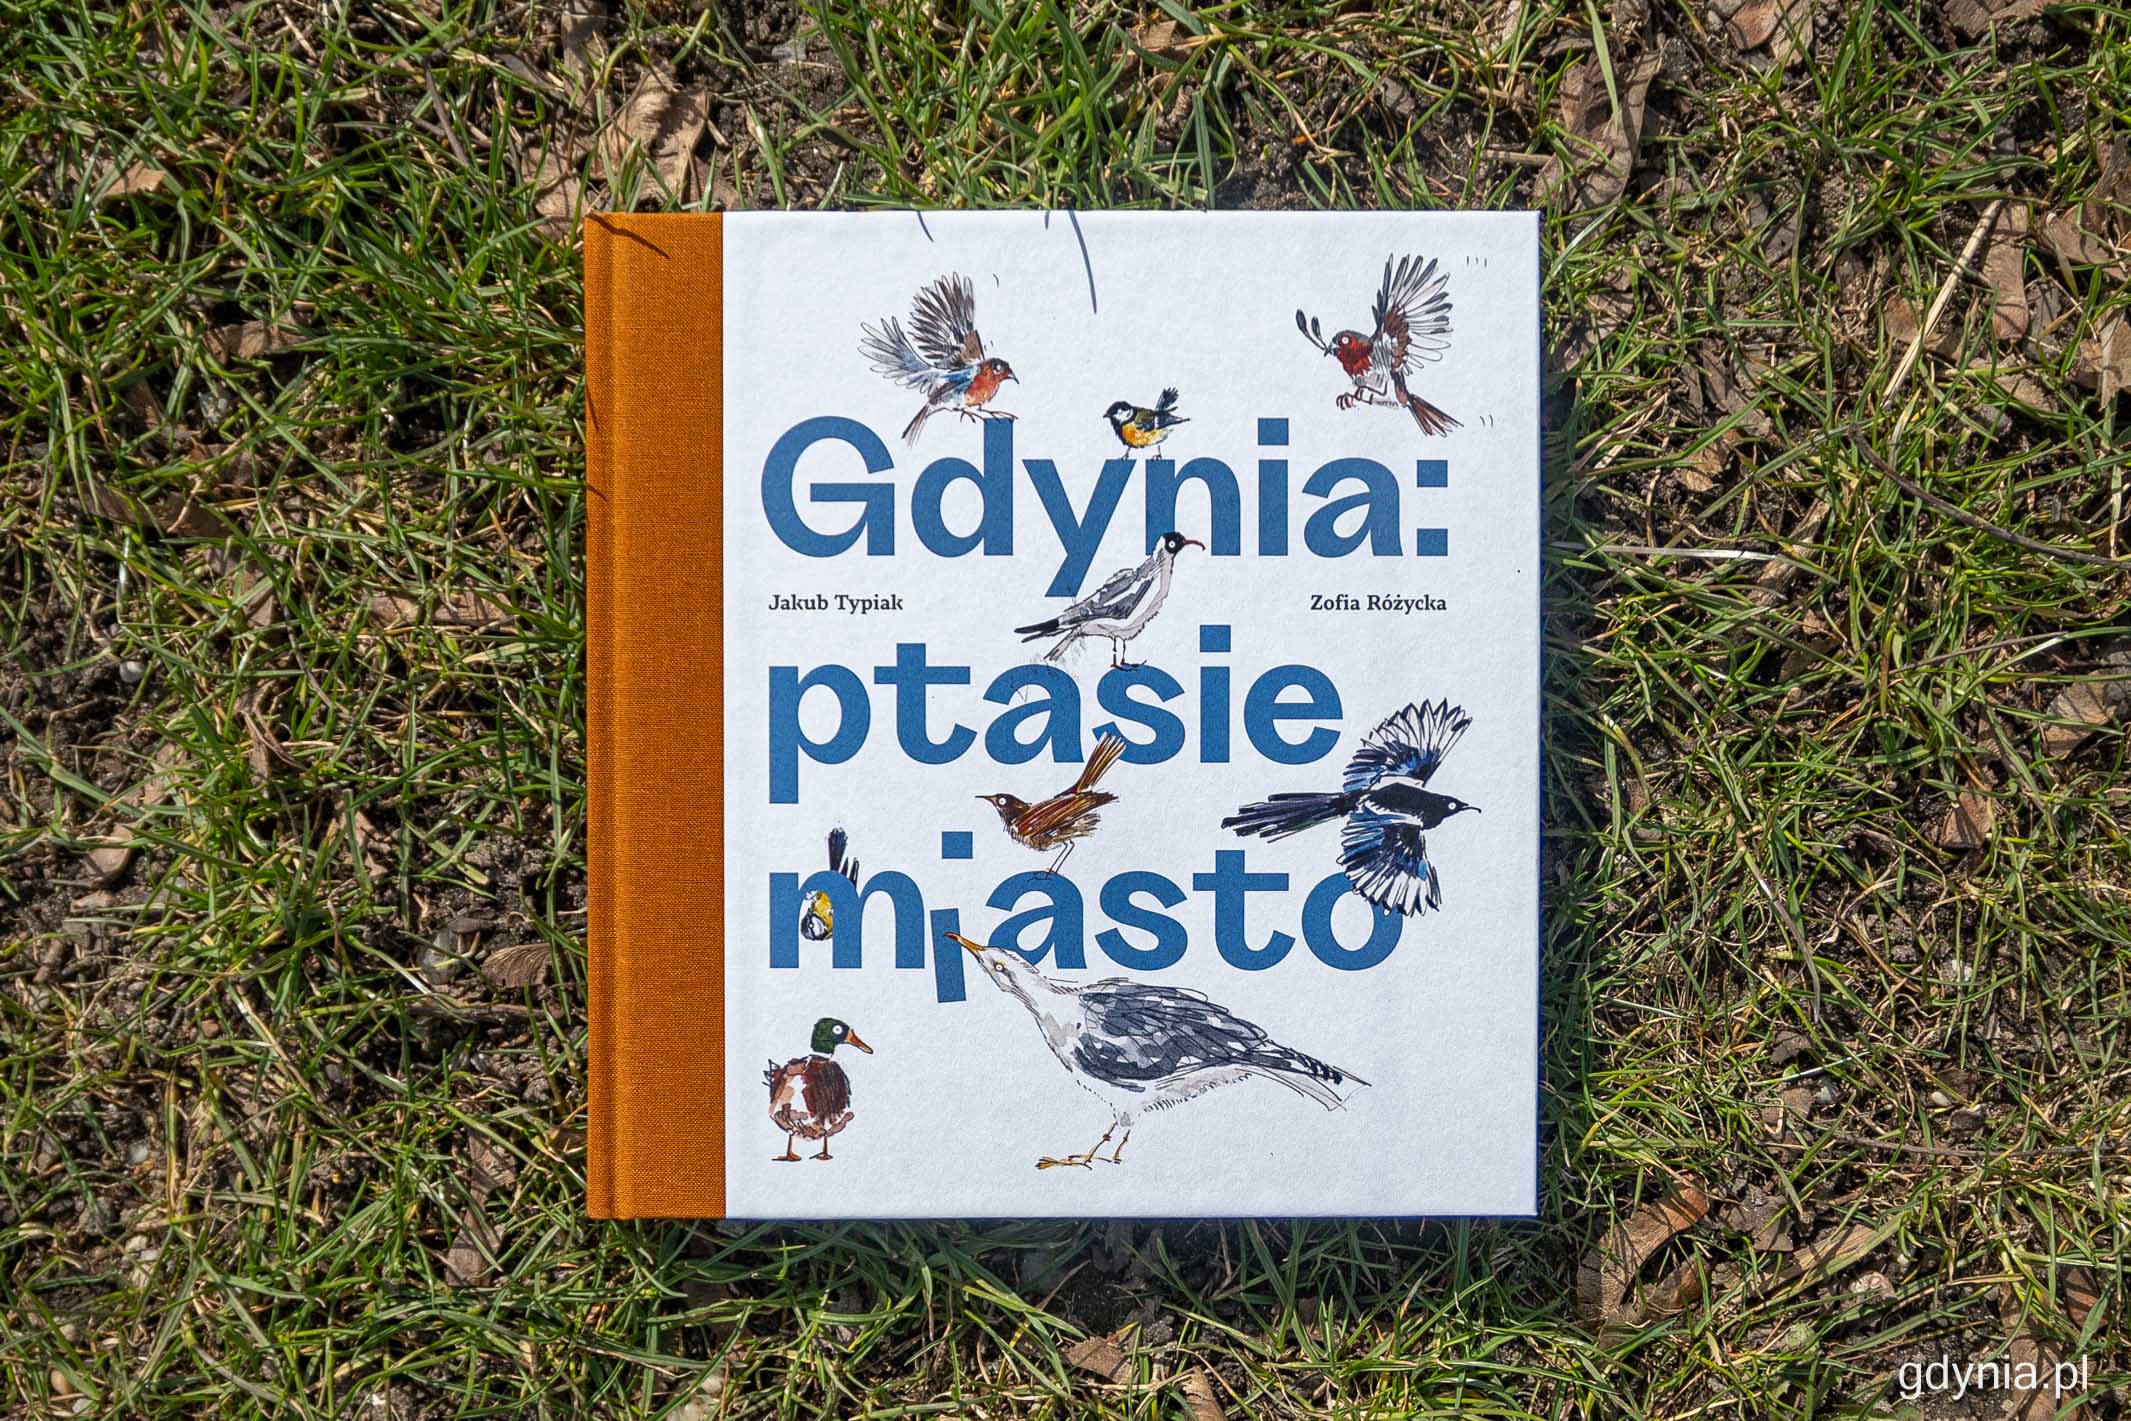 Okładka książki „Gdynia - ptasie miasto”, Jakub Typiak, Zofia Różycka